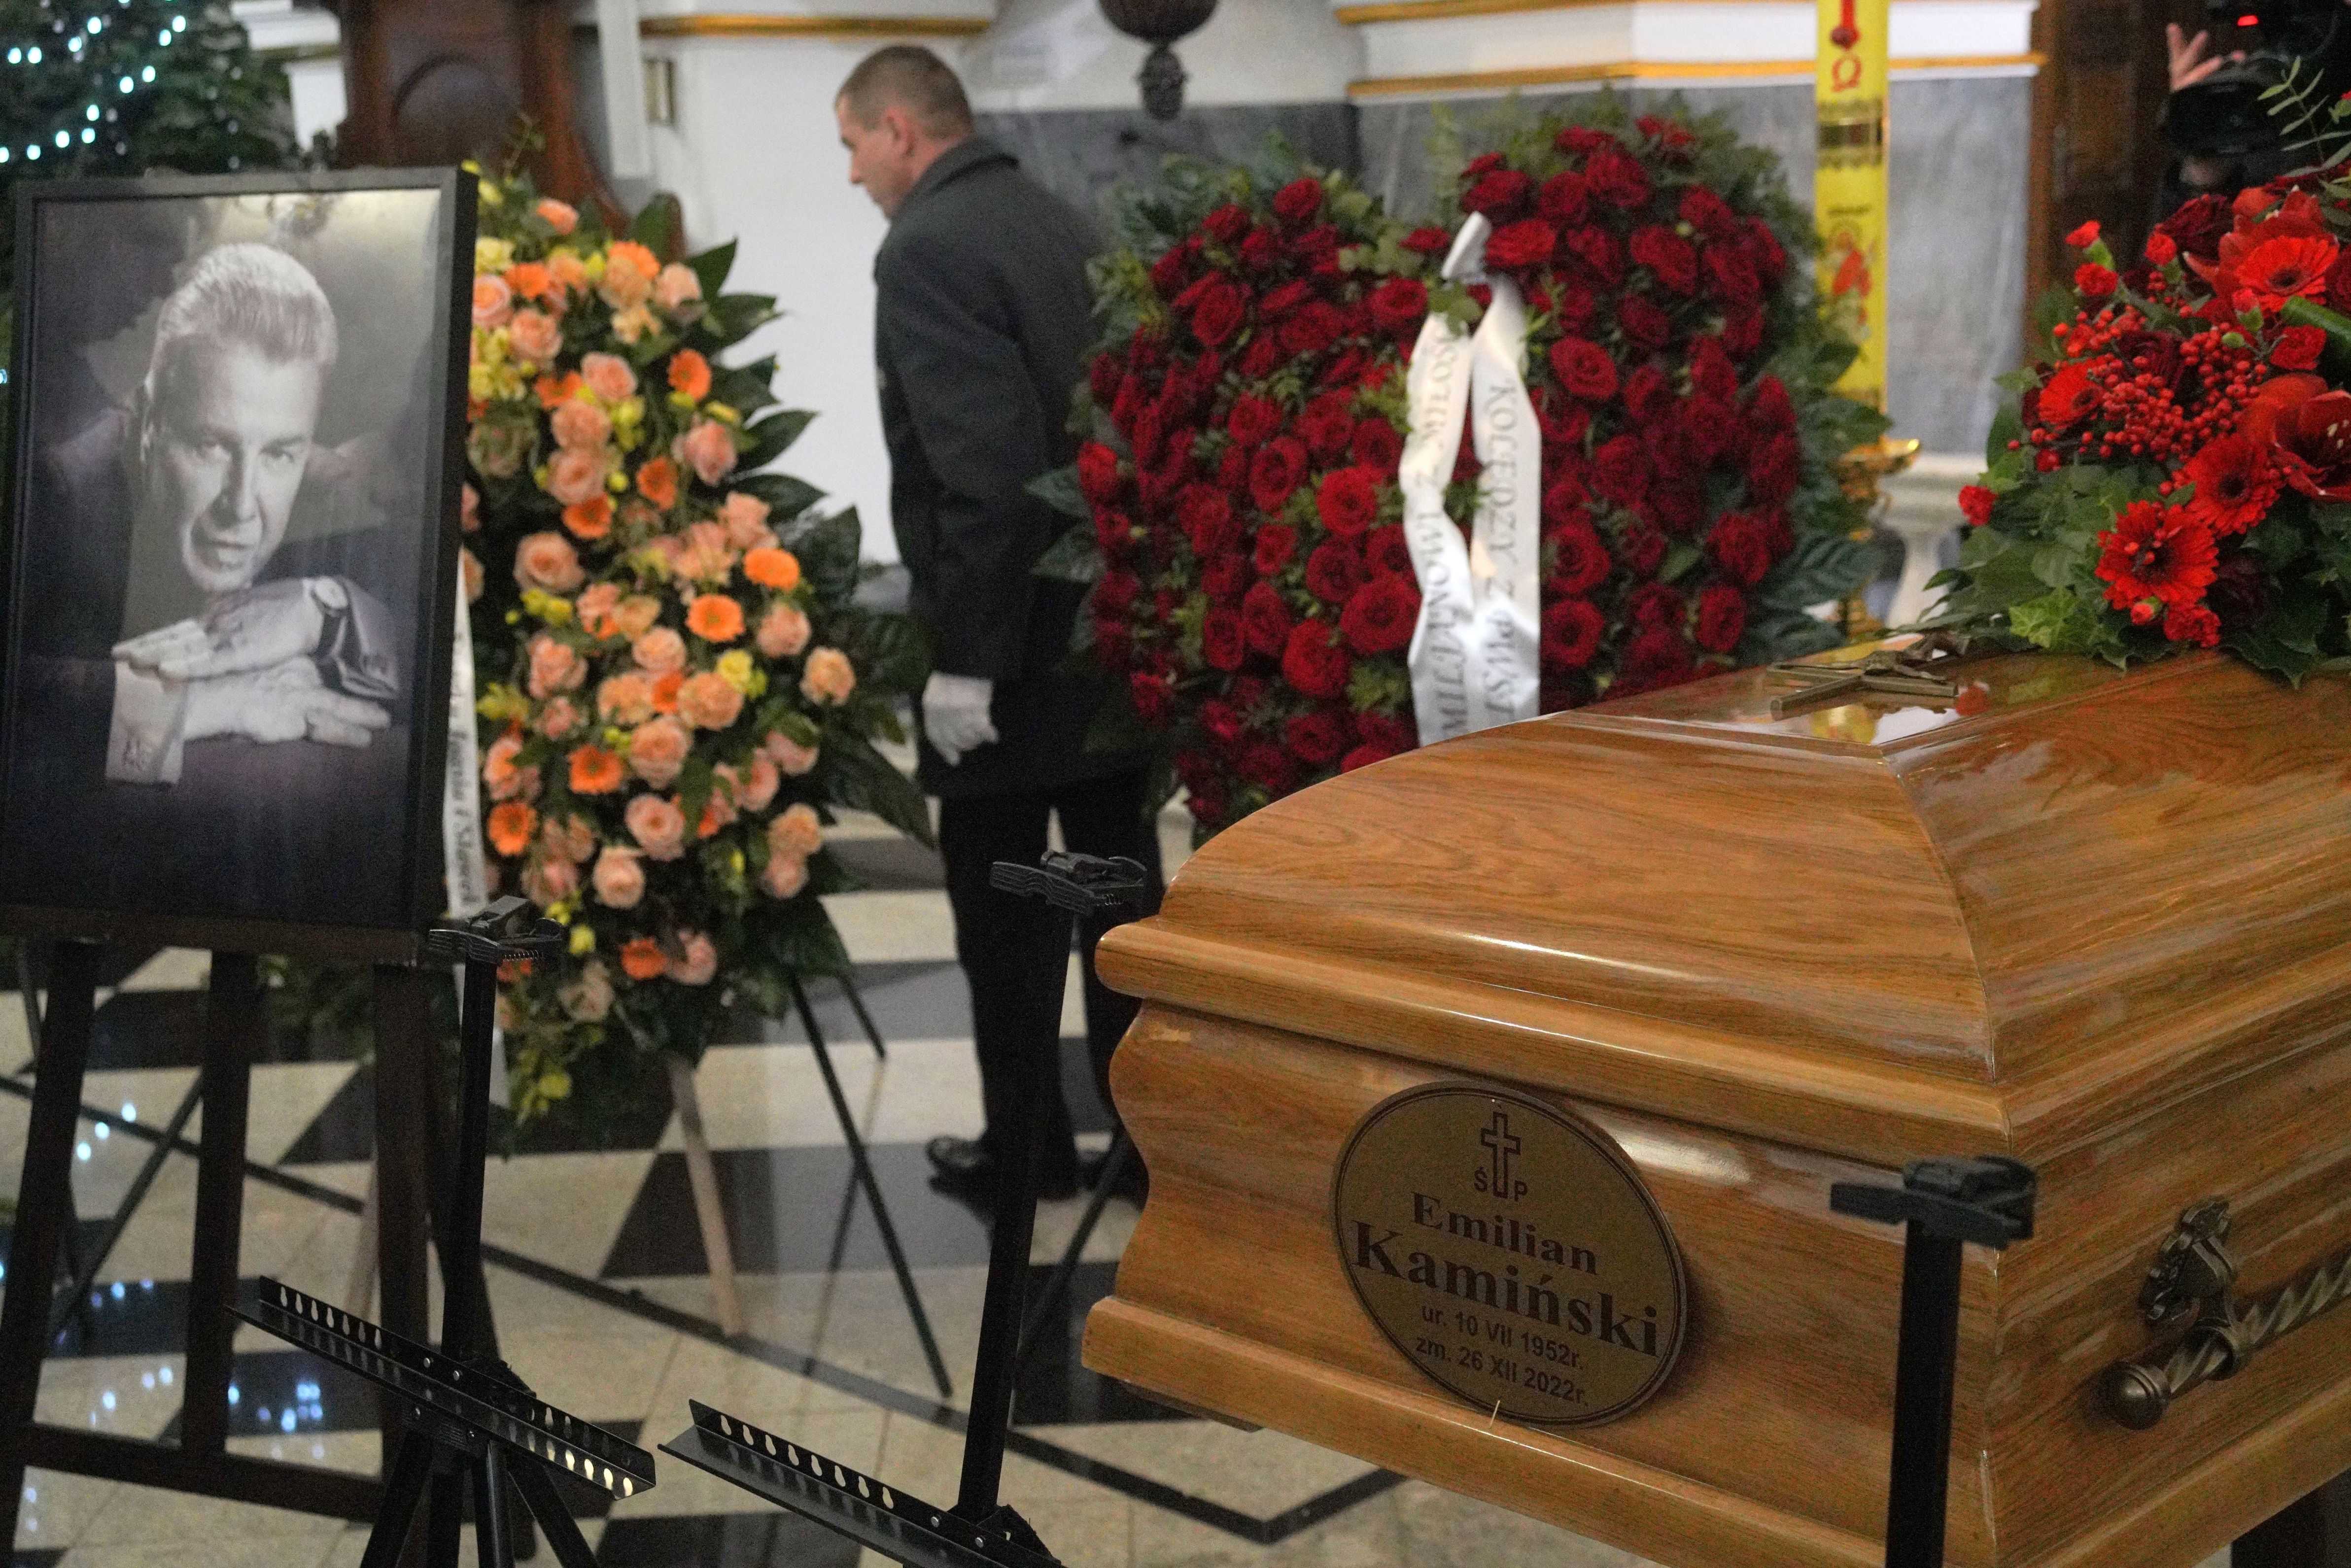 Pogrzeb Emiliana Kamińskiego 